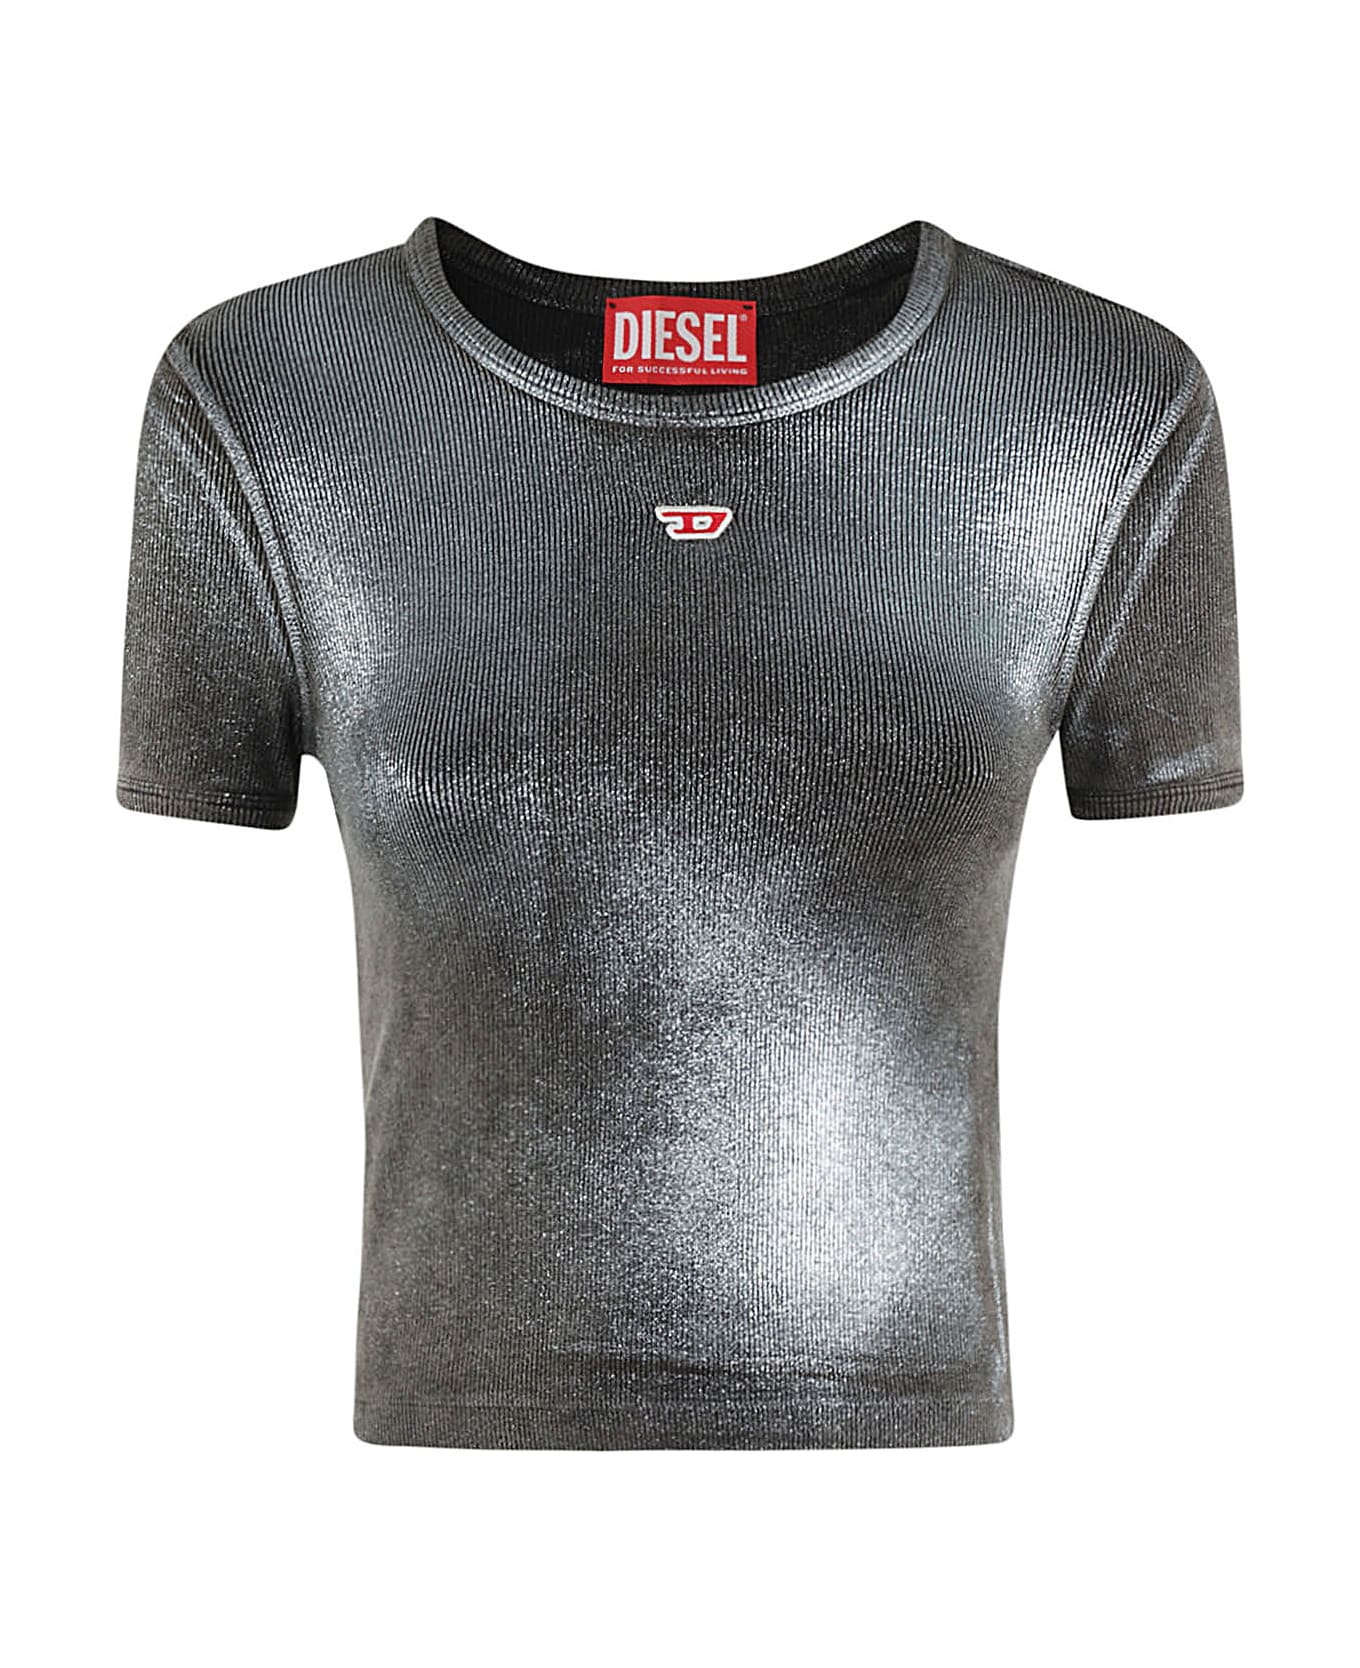 Diesel T-elen1 T-shirt - Nero